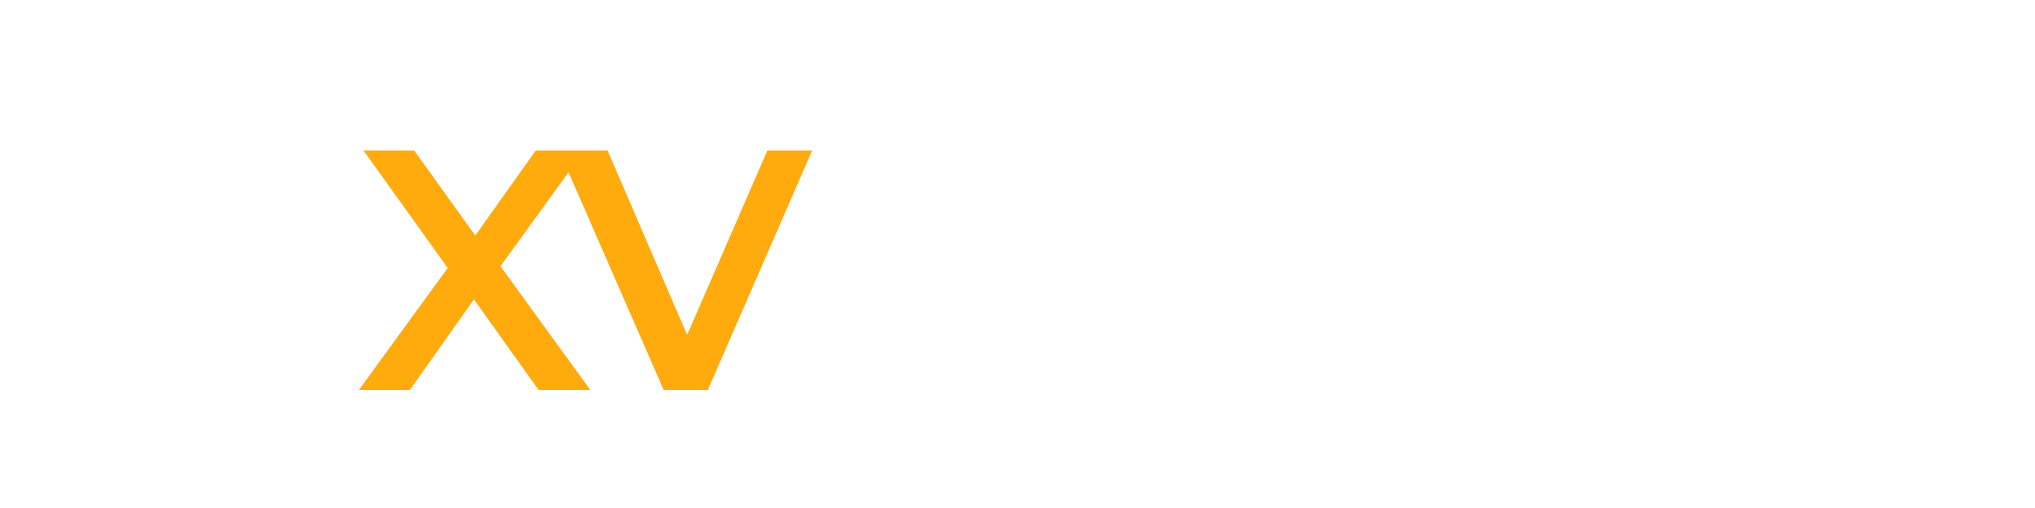 Título del XV Congreso Internacional de Diagnóstico por Imágenes